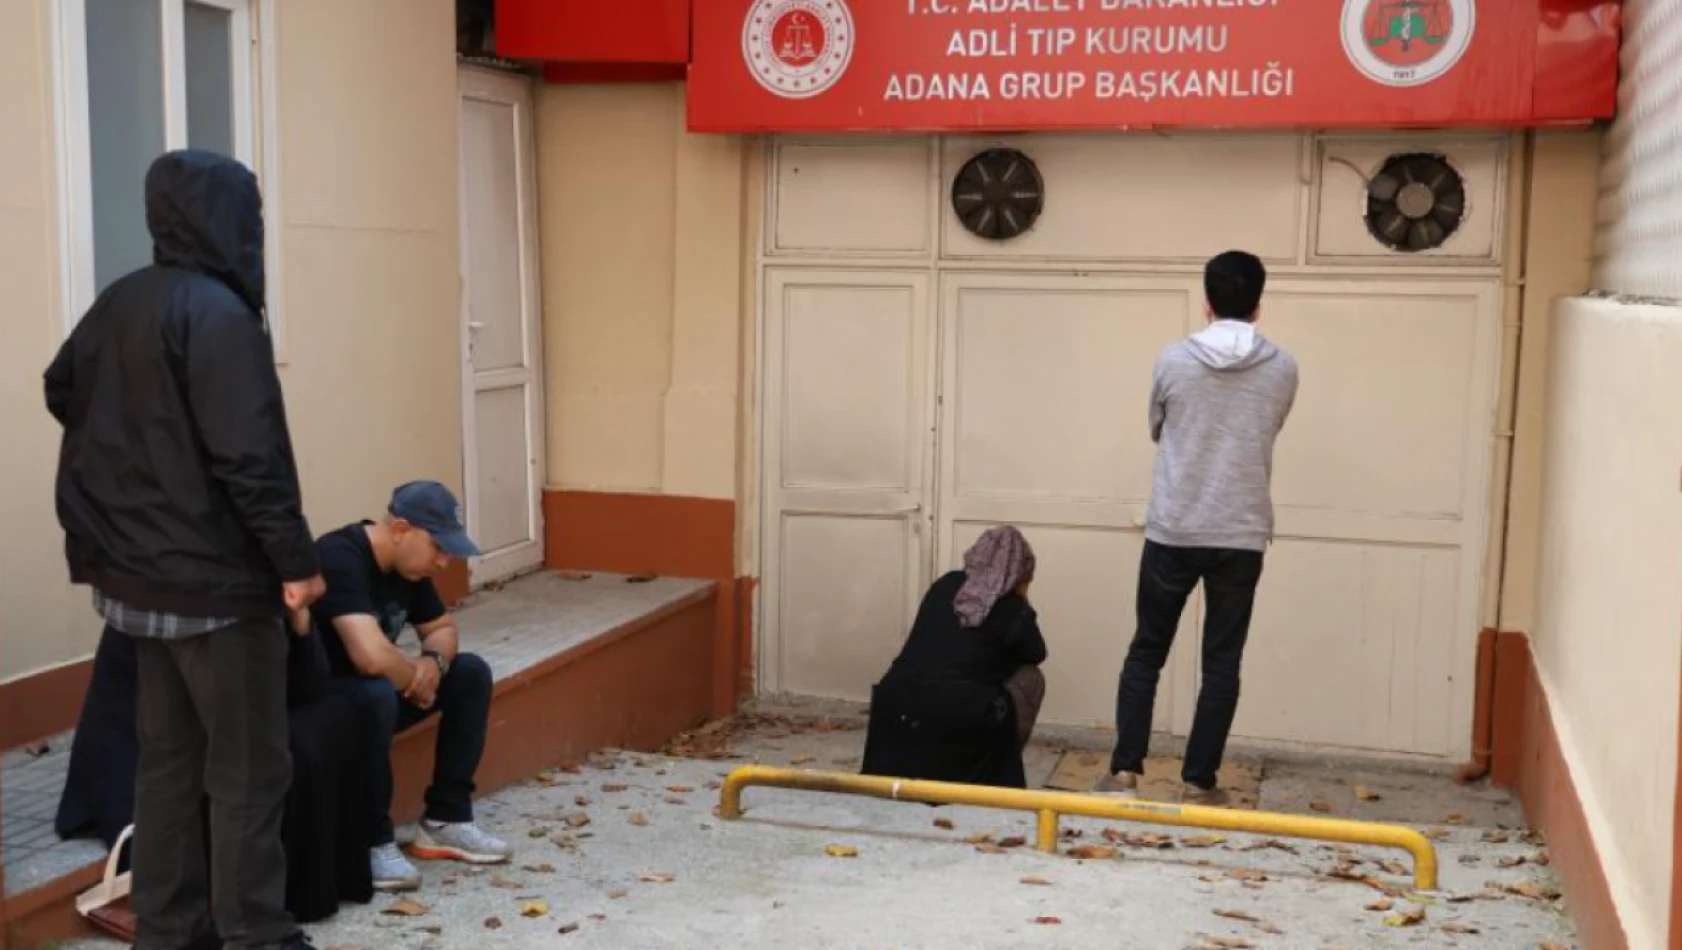 Adana'da cansız bedenine ulaşılmıştı - Detaylar açığa çıktı!